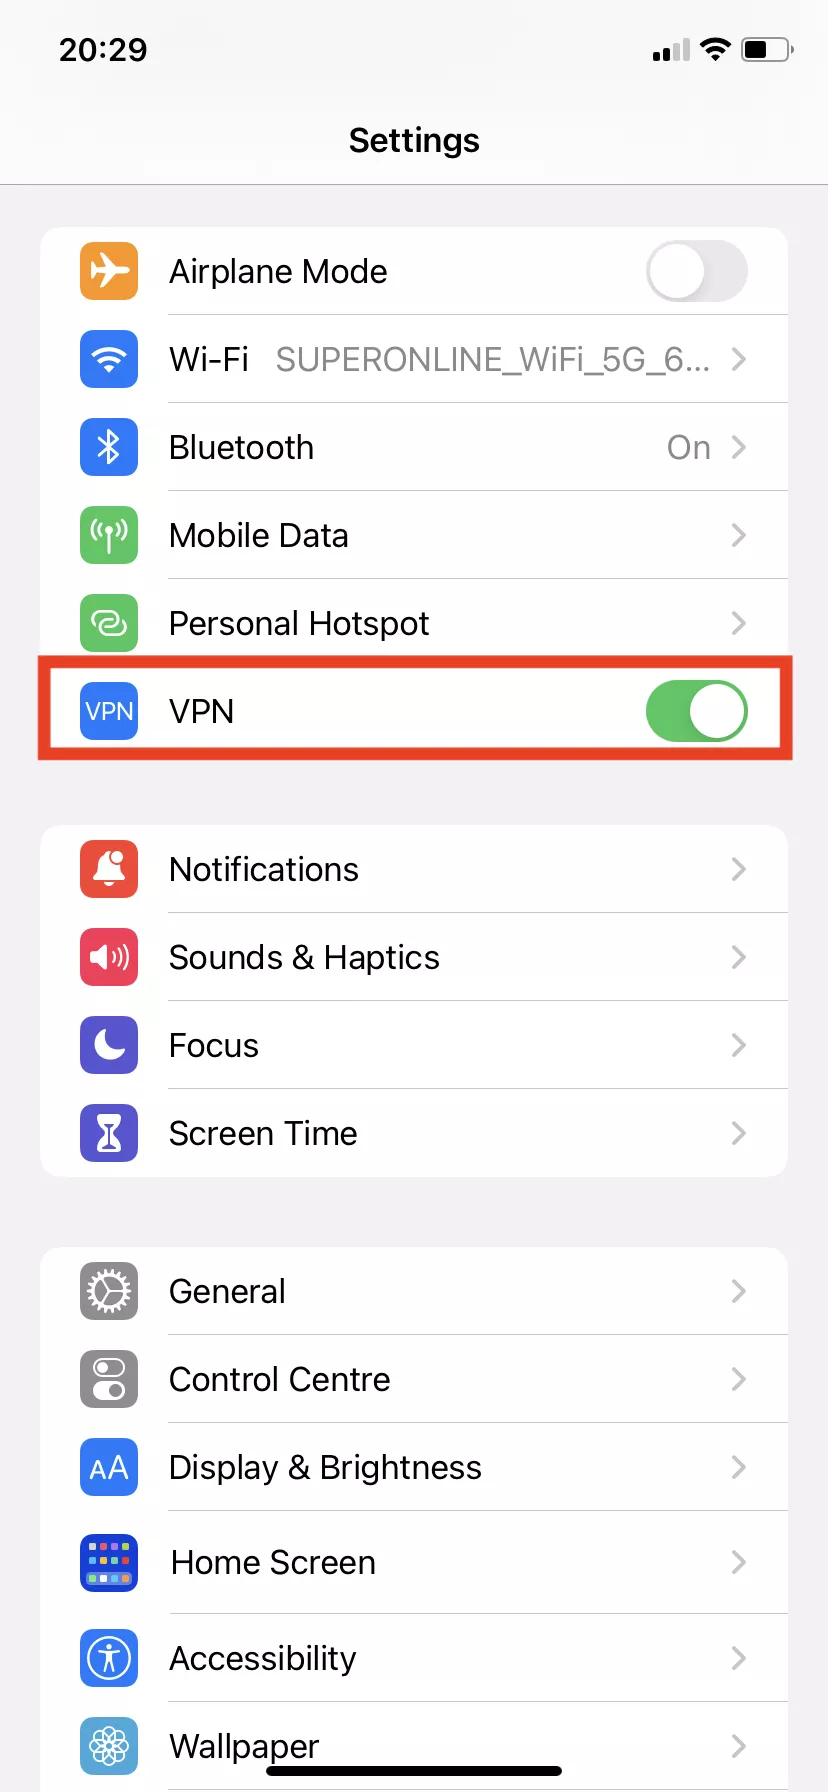 How do I enable VPN on Apple?